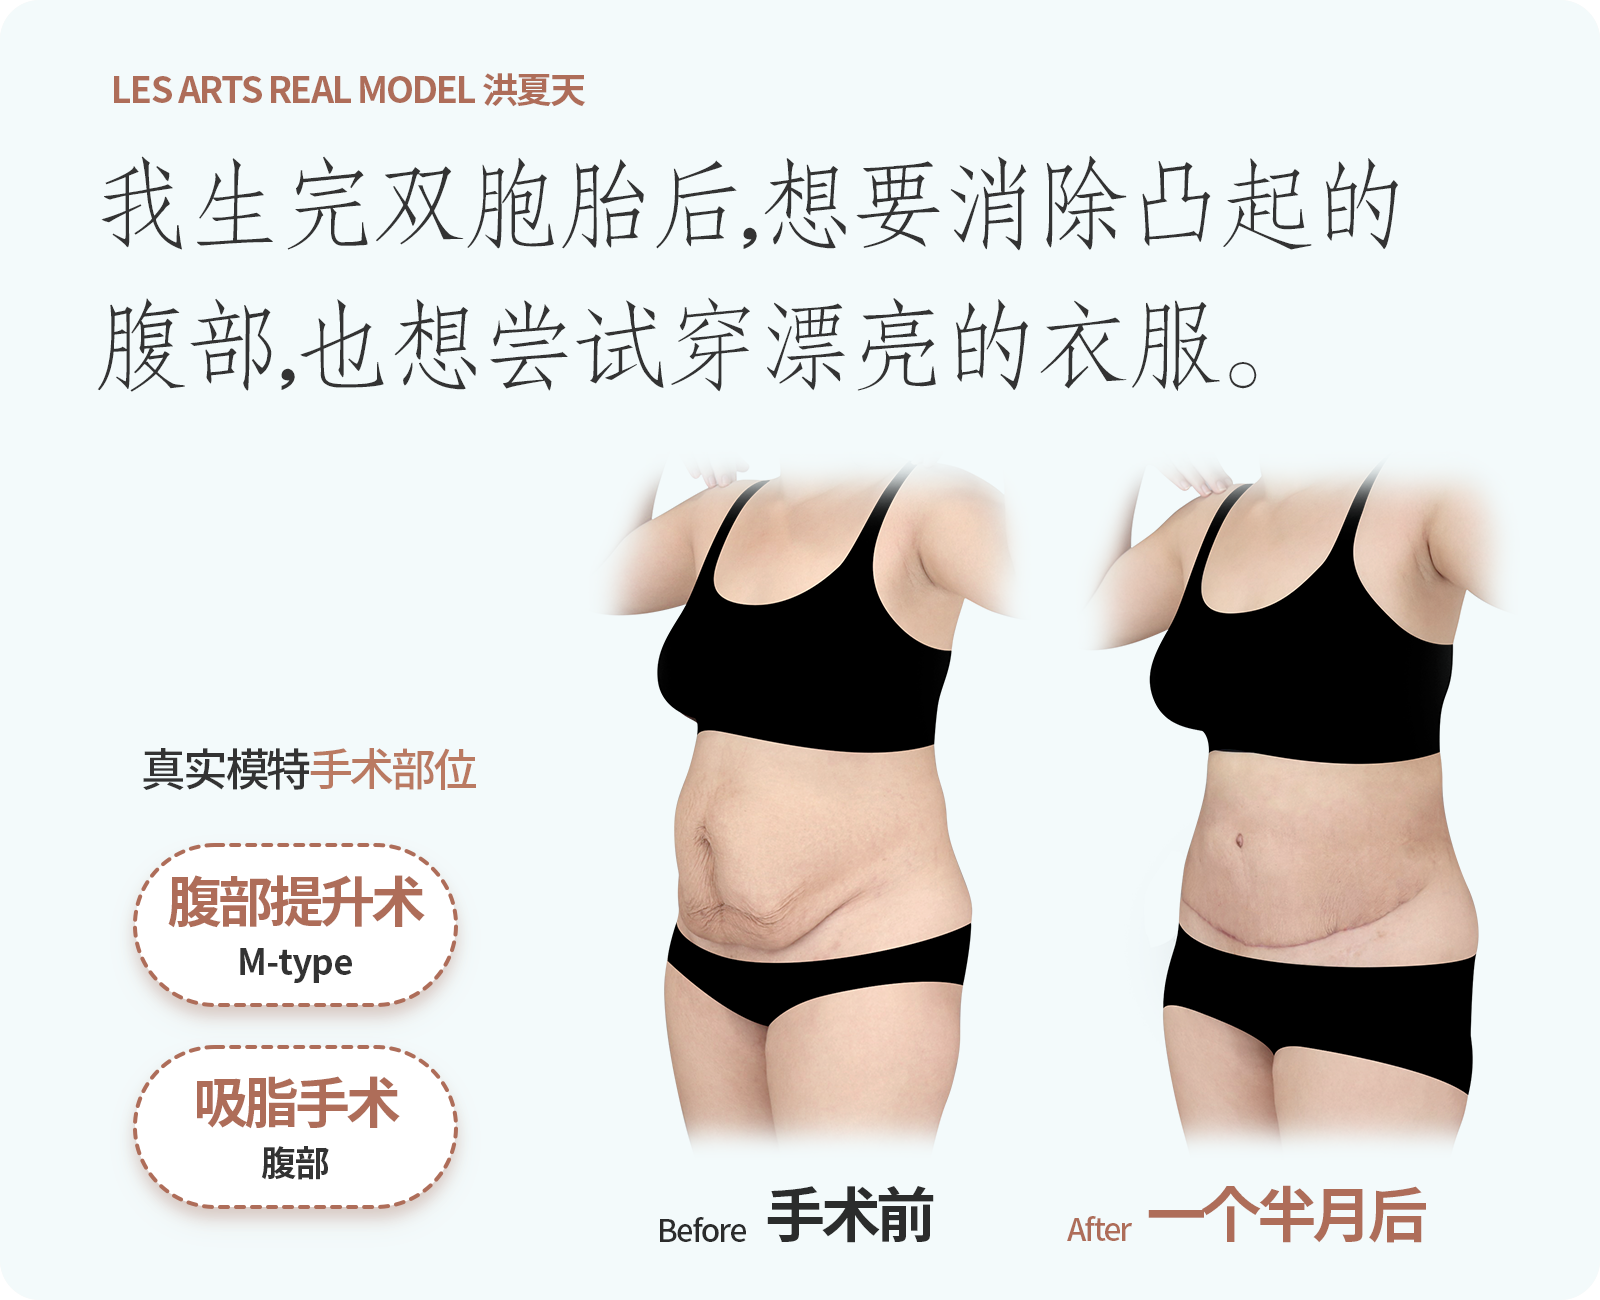 복부거상,지방흡입한 리얼모델